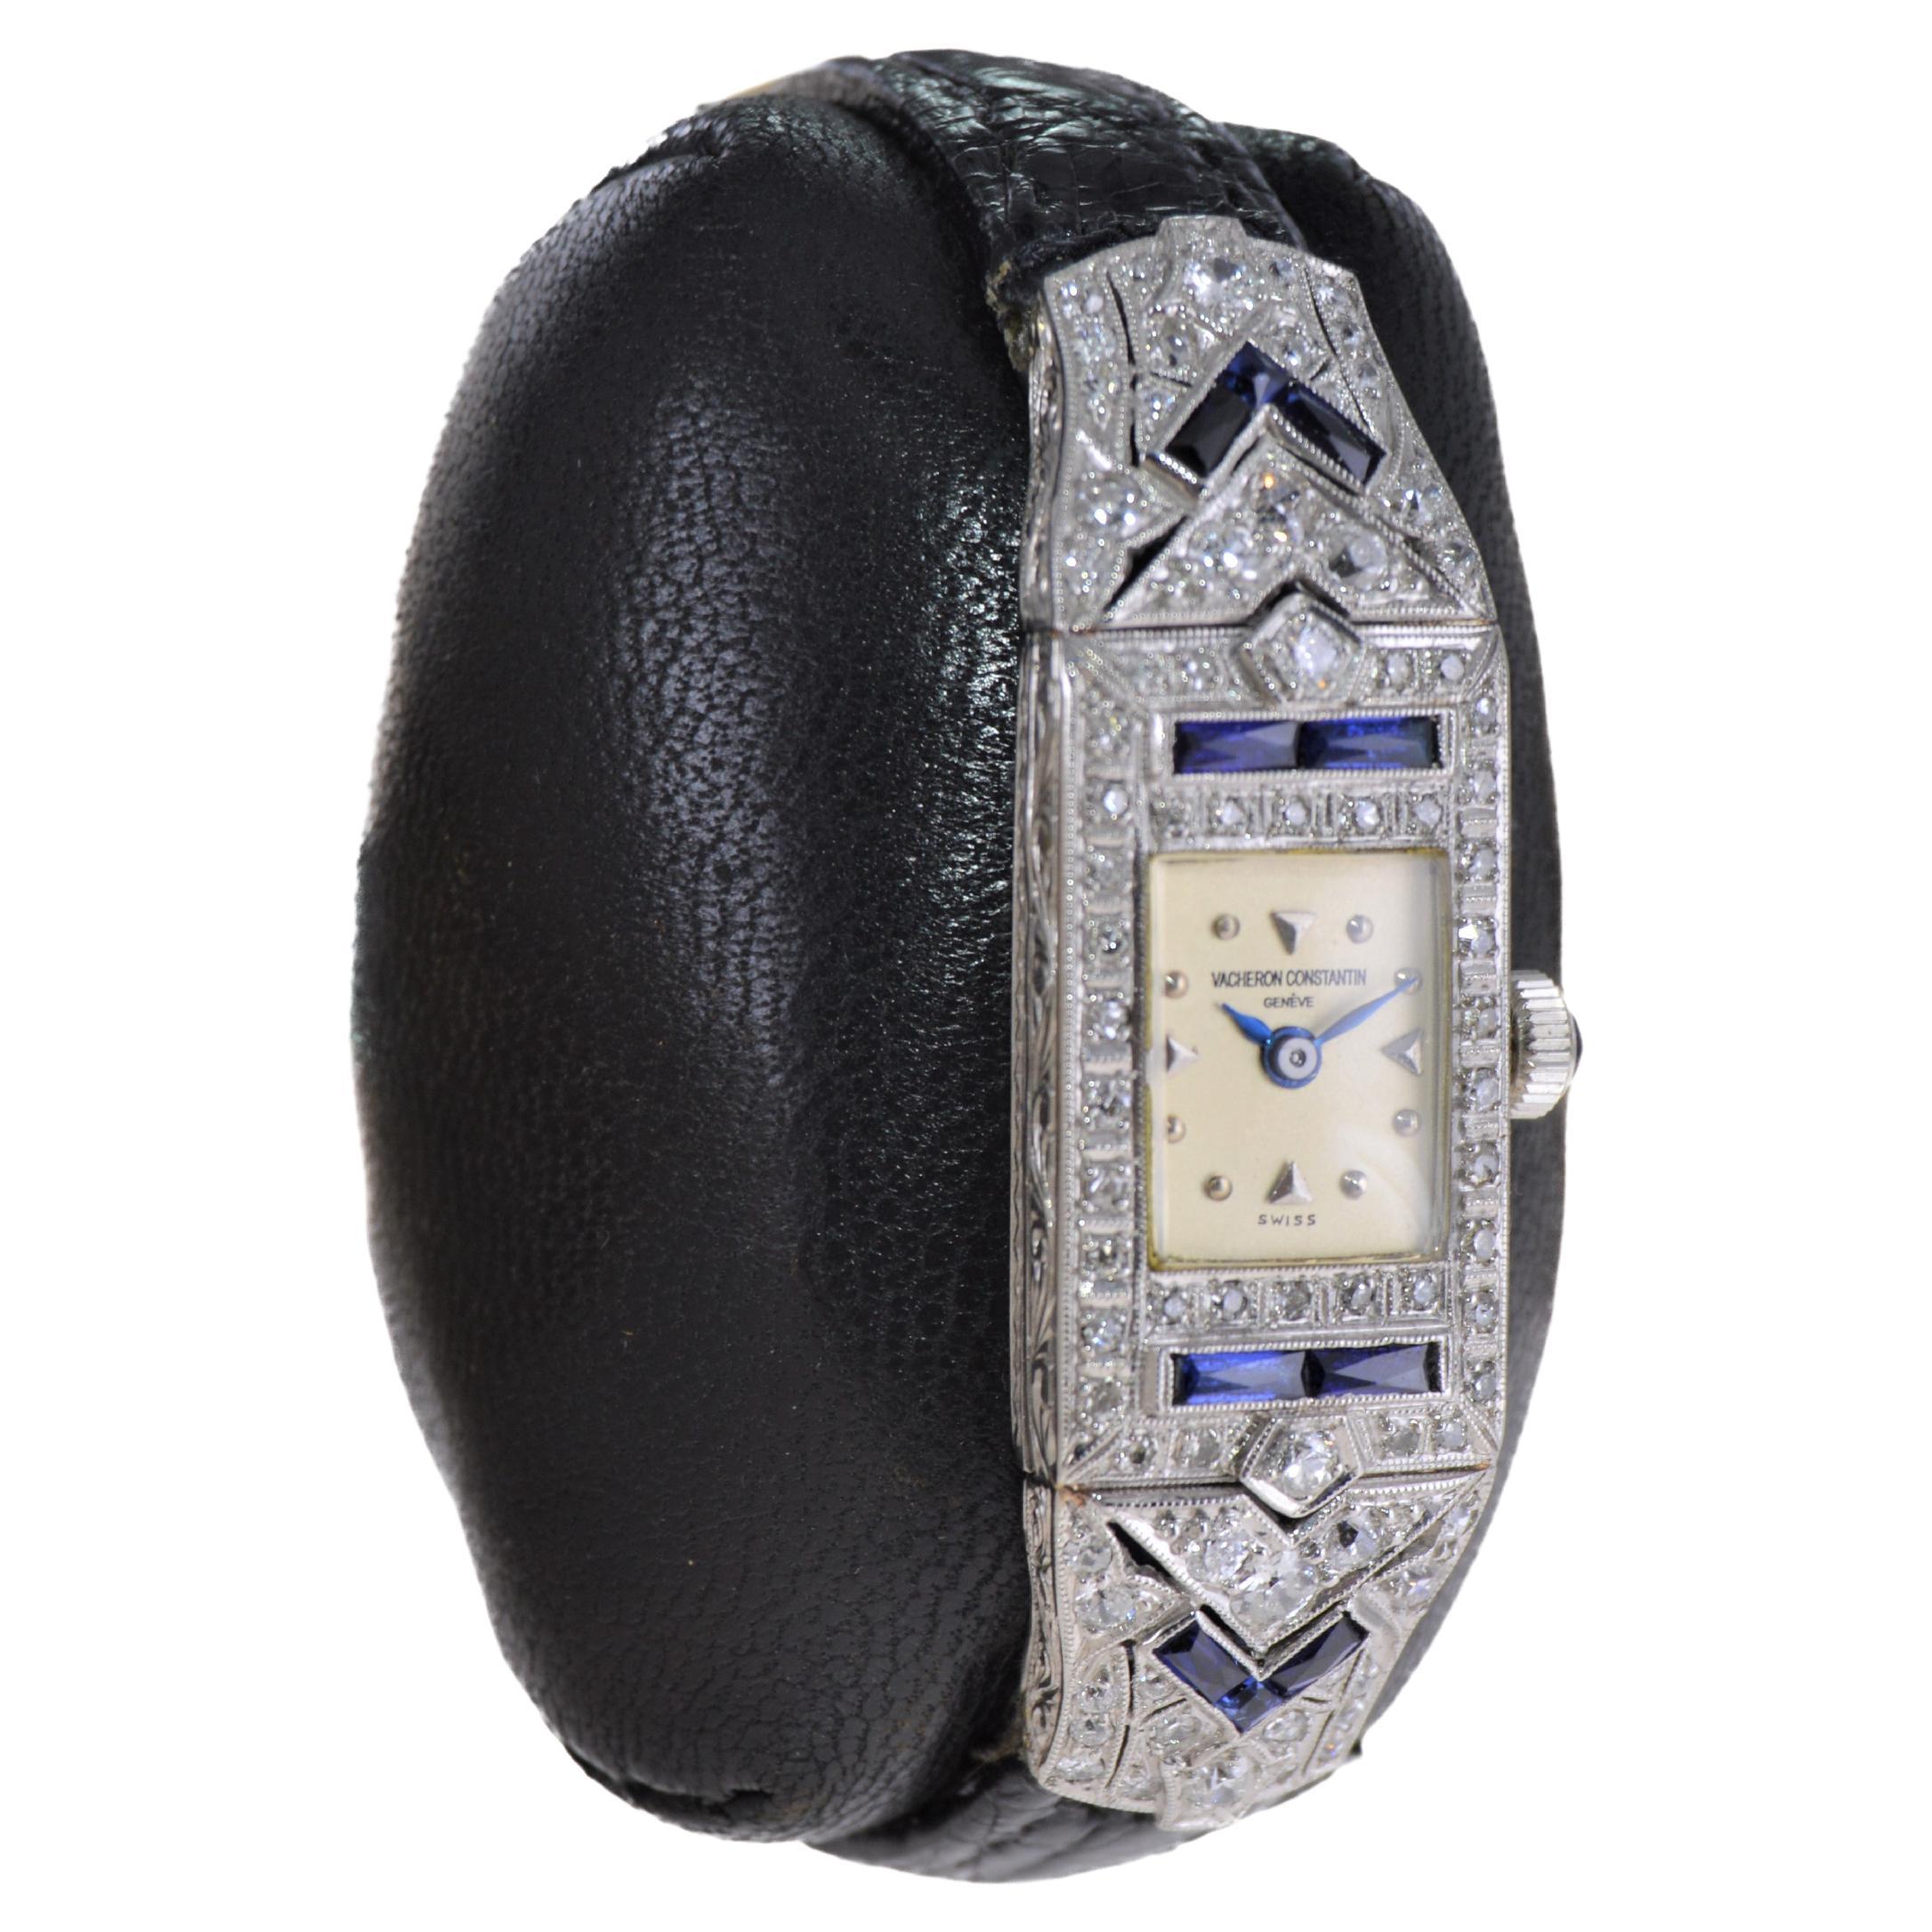 Vacheron Constantin Damen Platin Diamant Saphir Uhr aus den 1920er Jahren 1